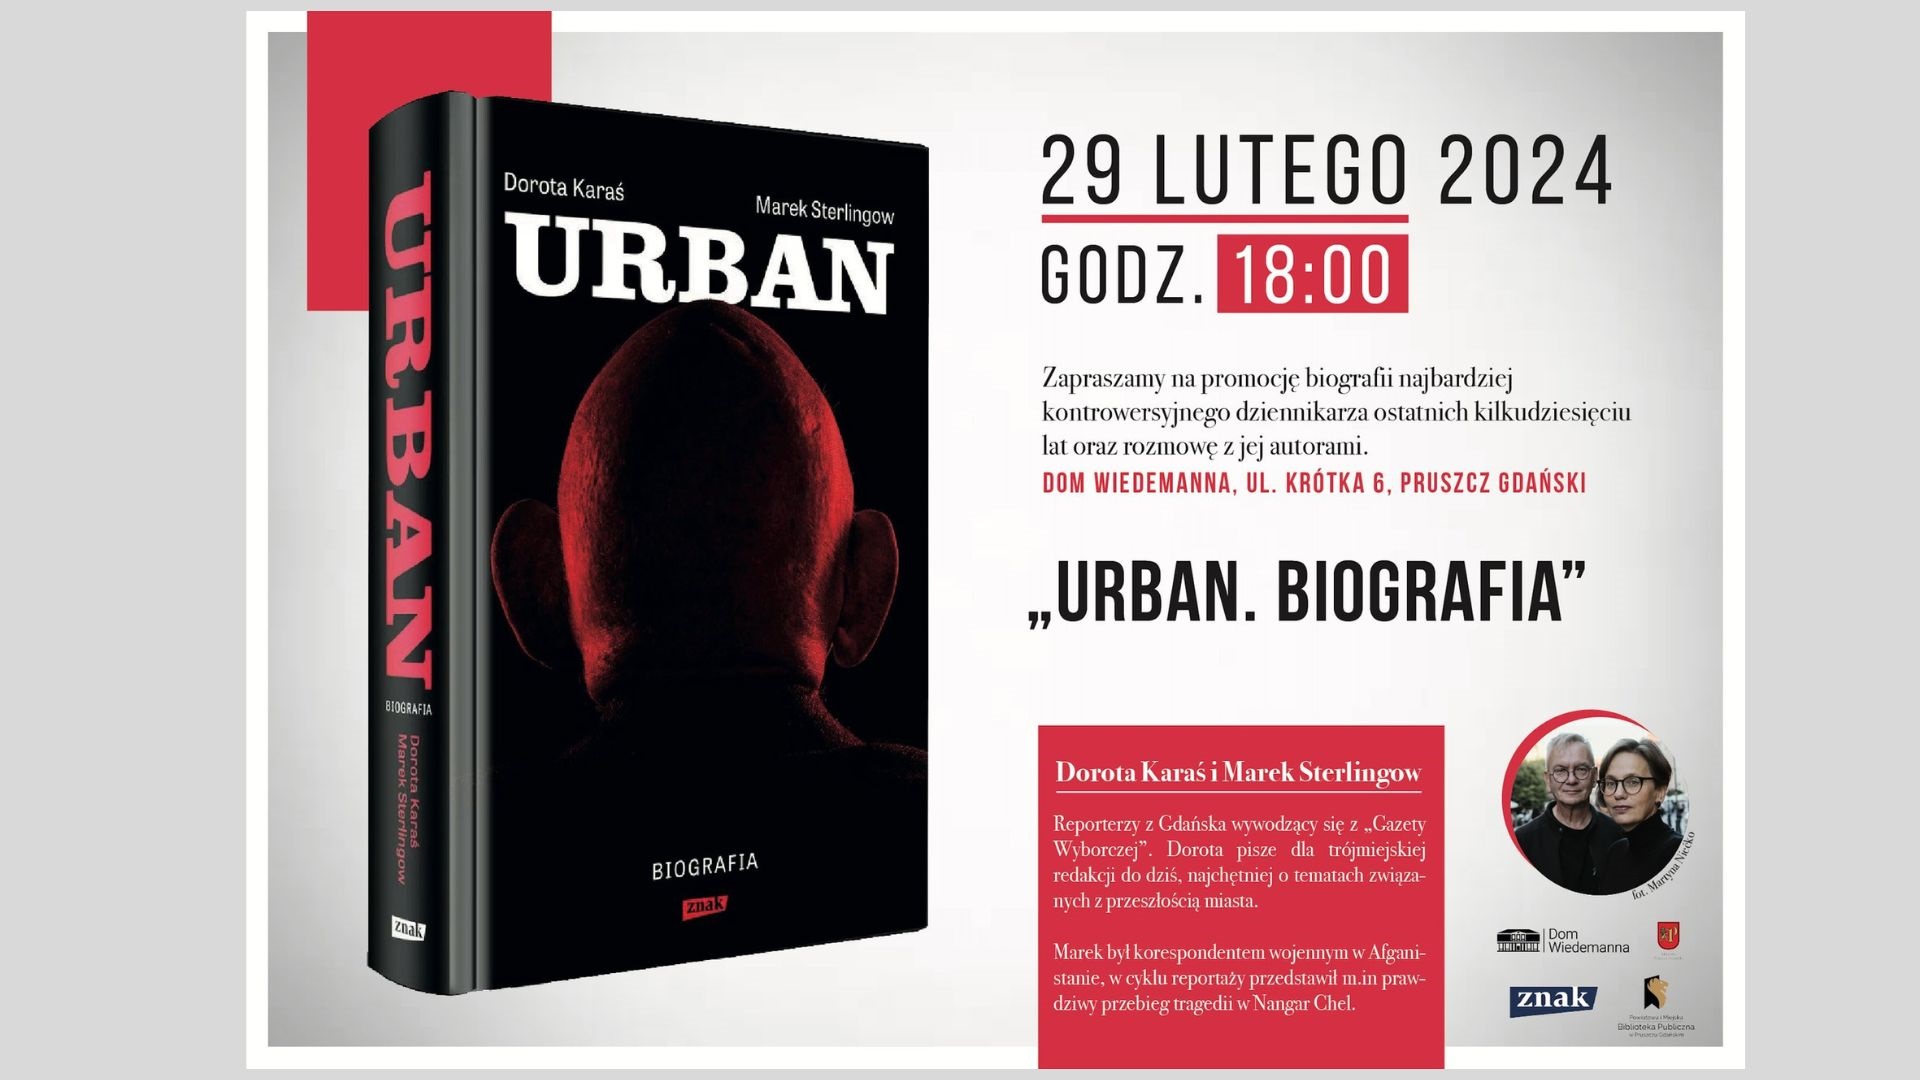 Książka „Urban. Biografia” Dorotą Karaś i Marek Sterlingow.